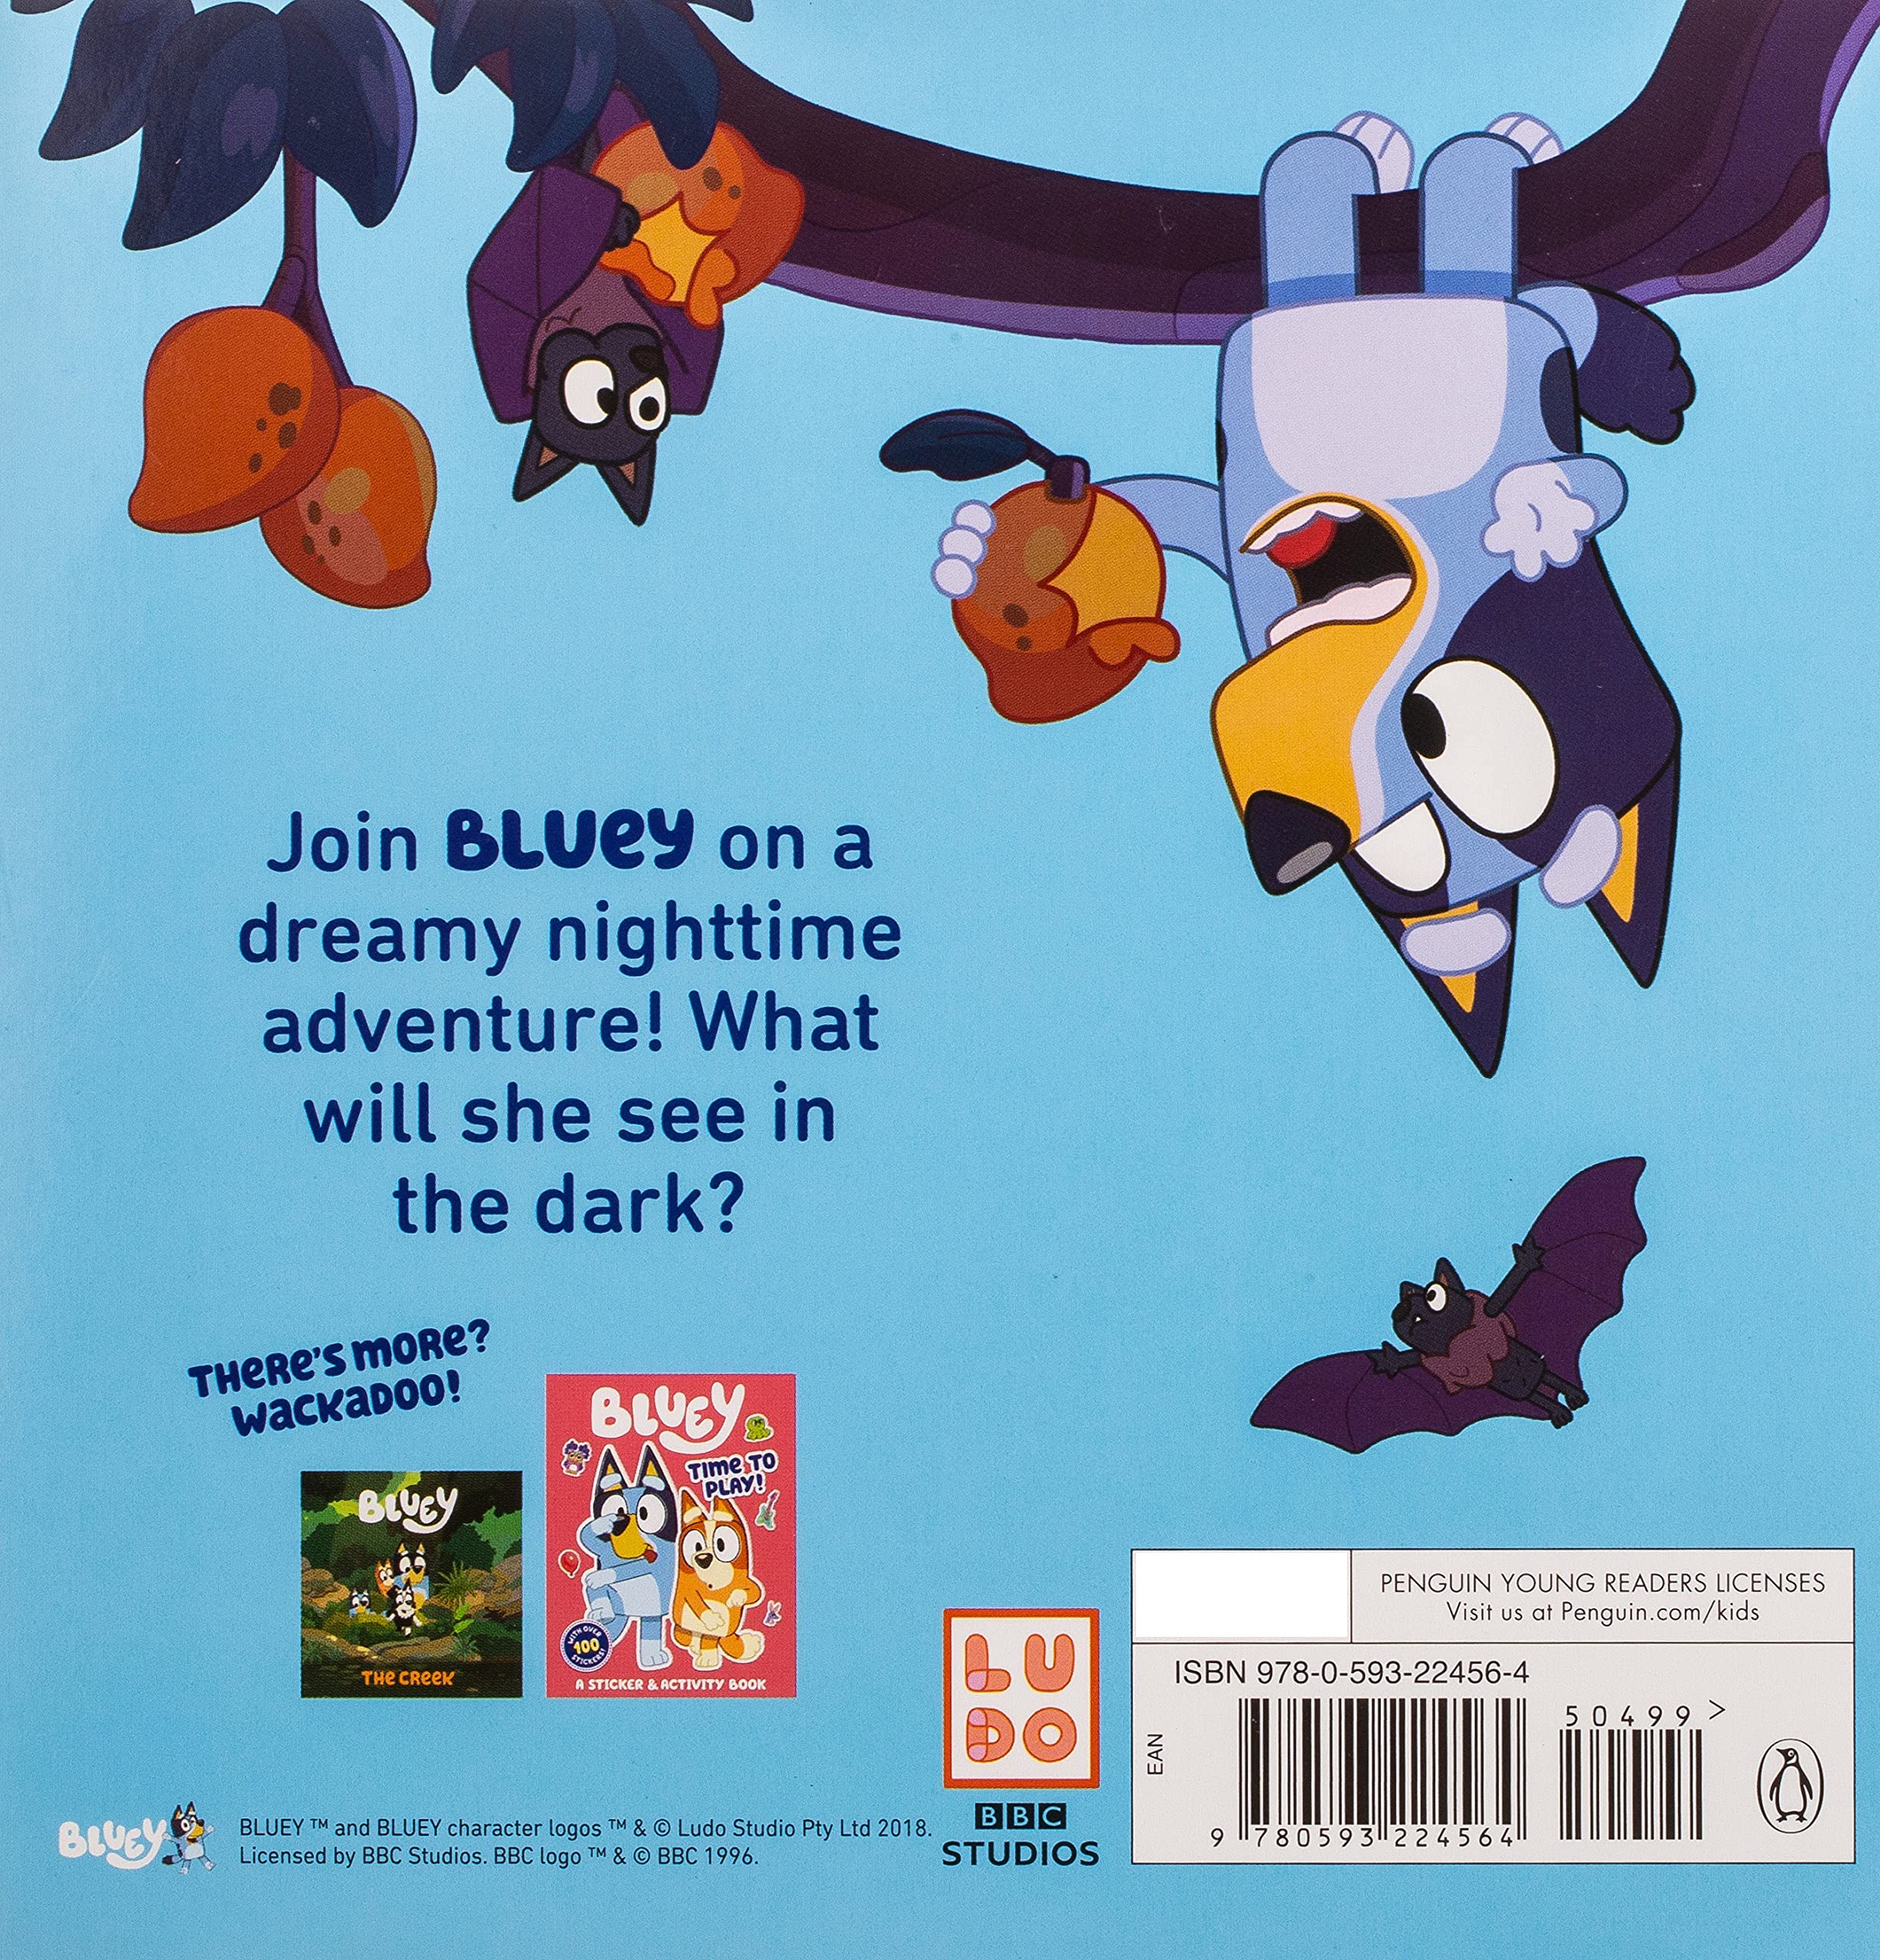 Bluey Good Night, Fruit Bat (Paperback)